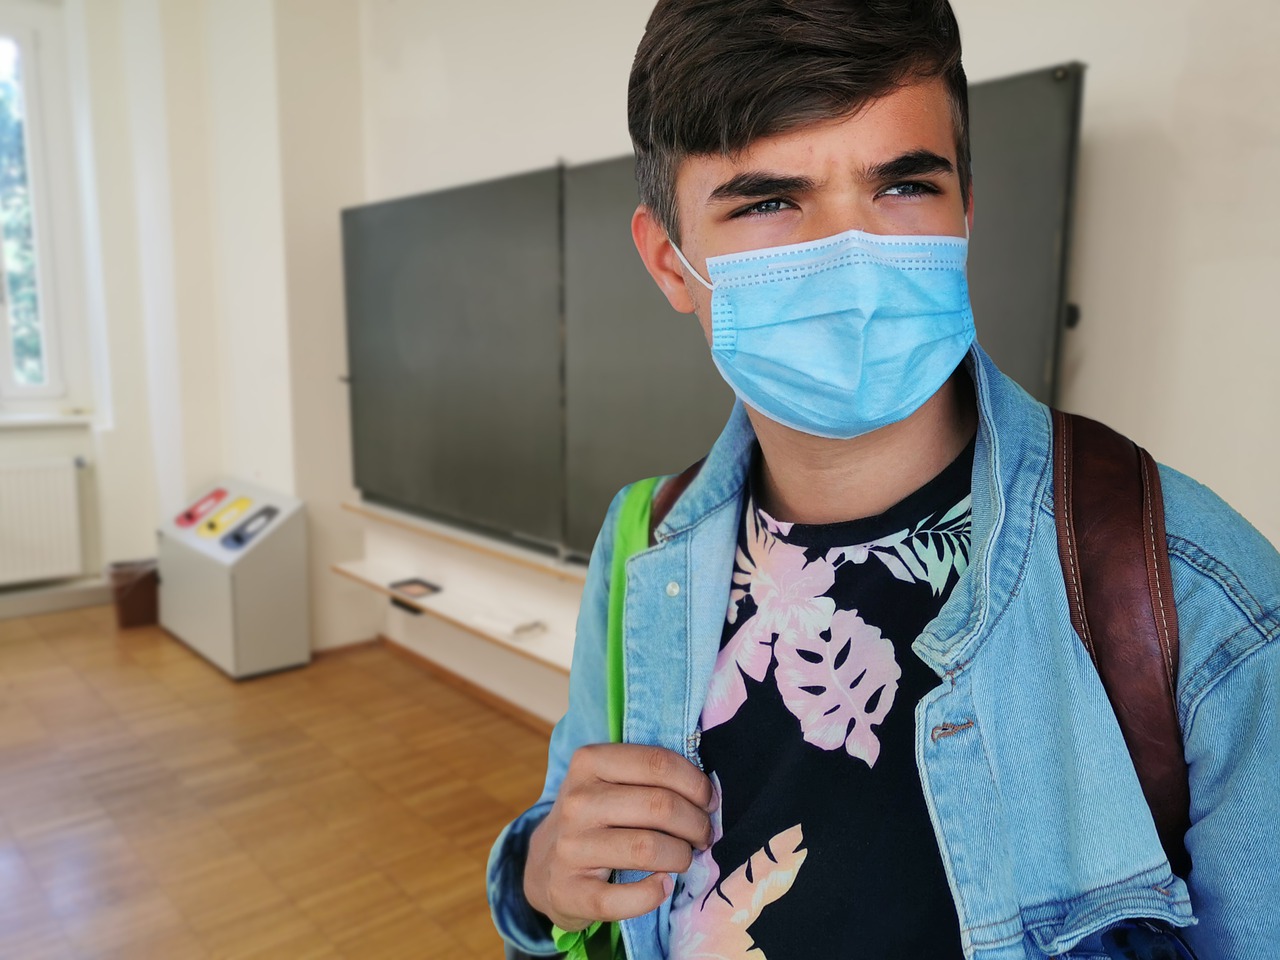 Powrót do szkół po pandemii – jak zadbać o dziecko?